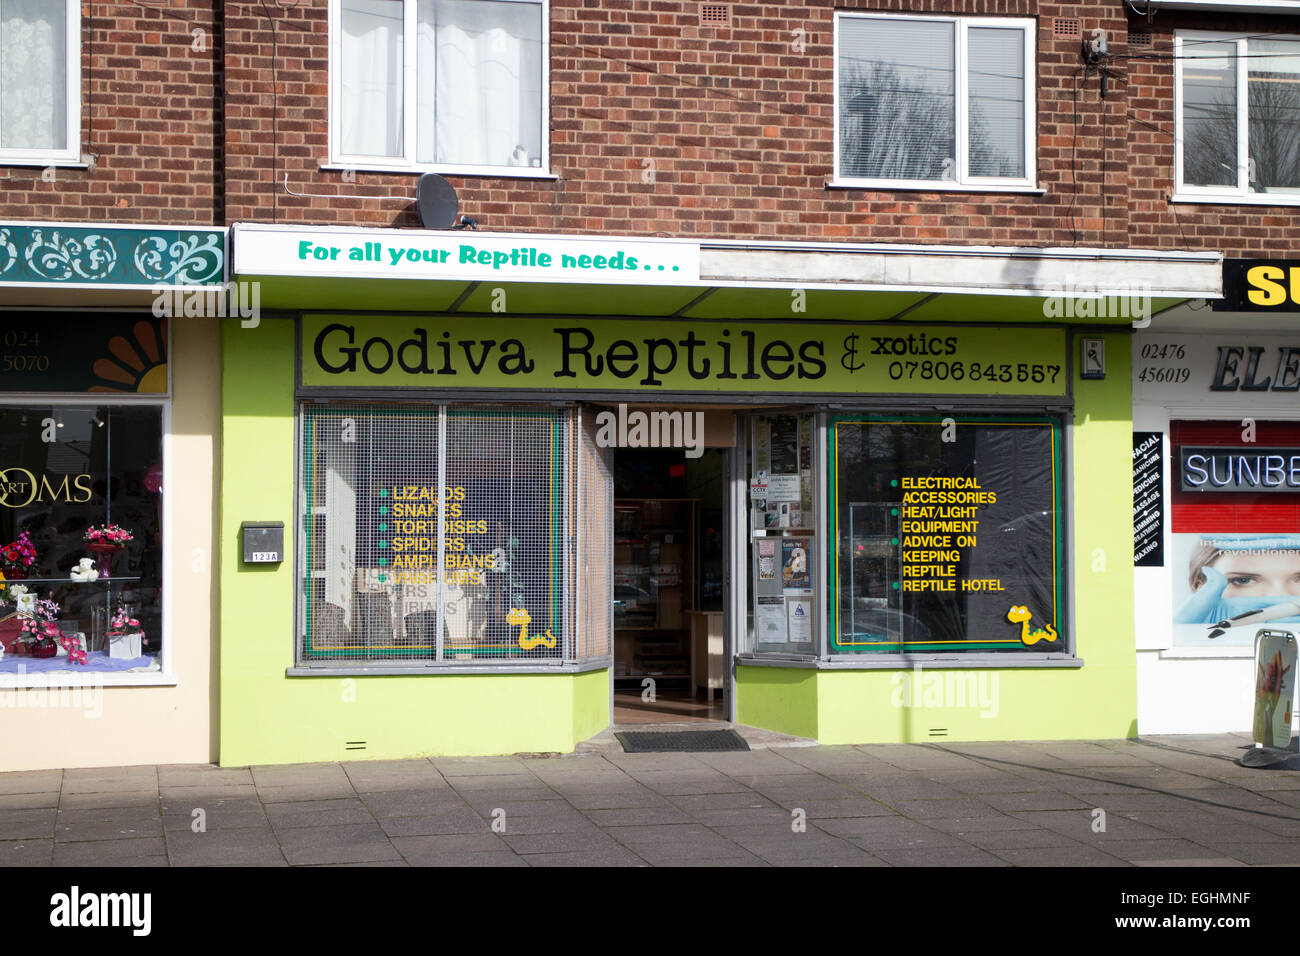 Una tienda de venta de reptiles, Coventry, Reino Unido Foto de stock